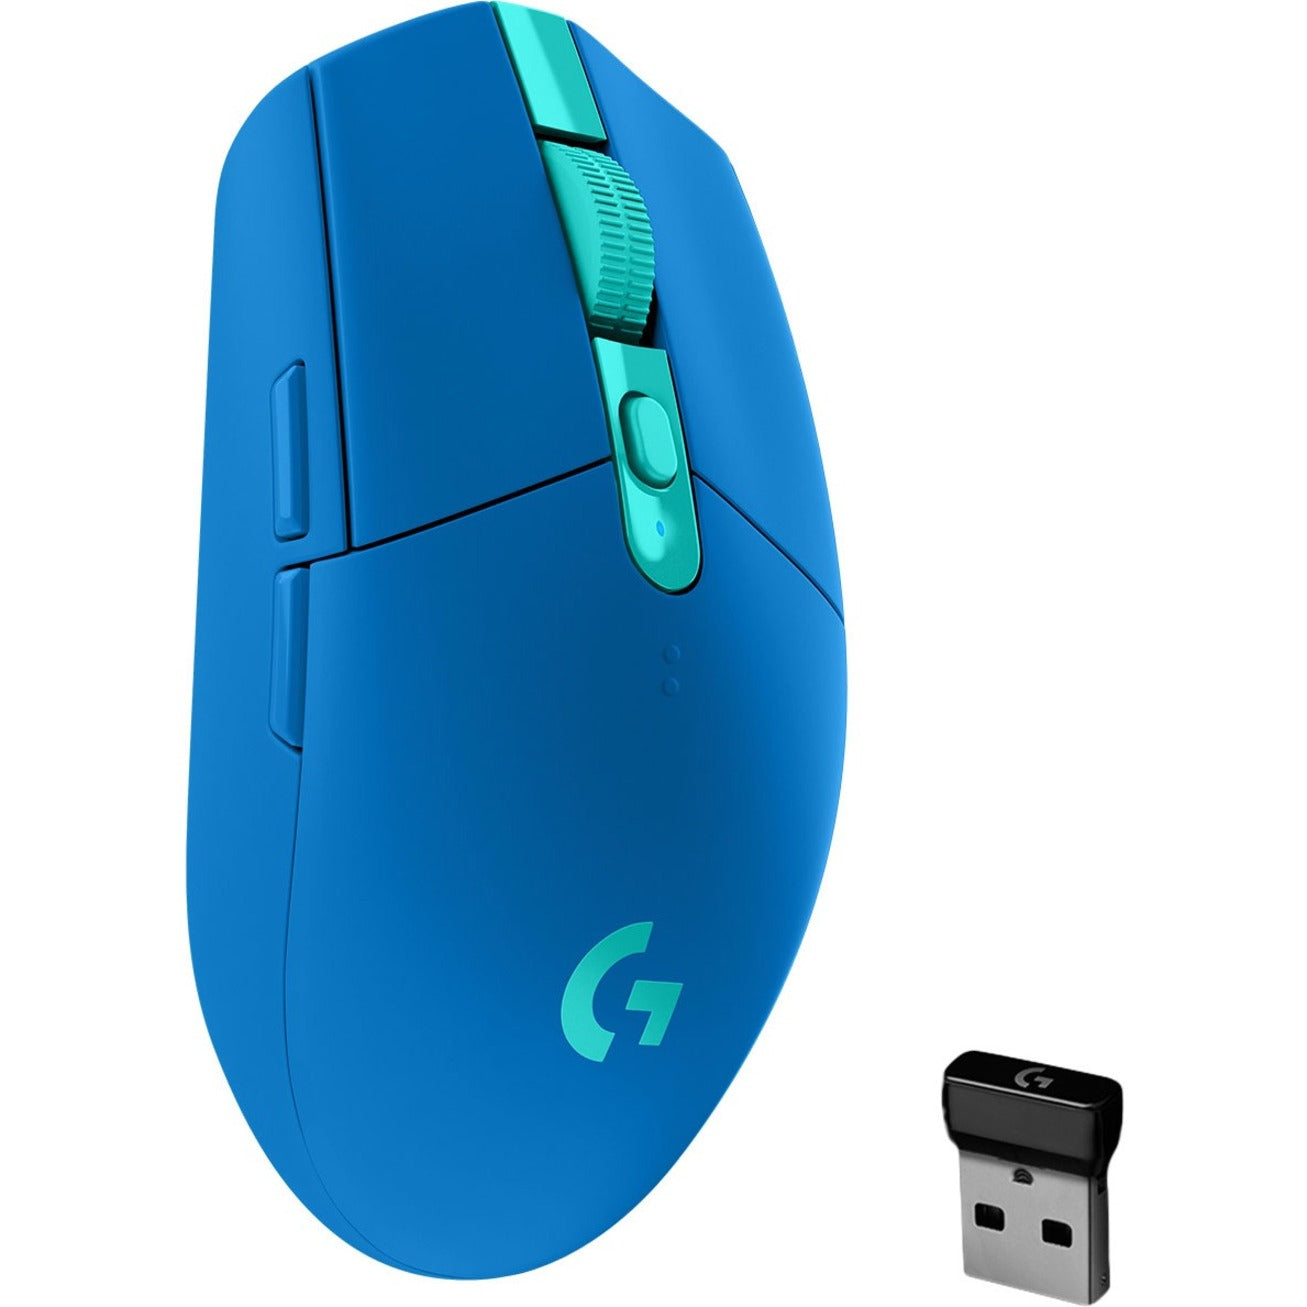 Logitech 910-006012 G305 LIGHTSPEED Wireless Gaming Mouse, 2 Year Warranty, 12000 dpi, 2.4 GHz Wireless